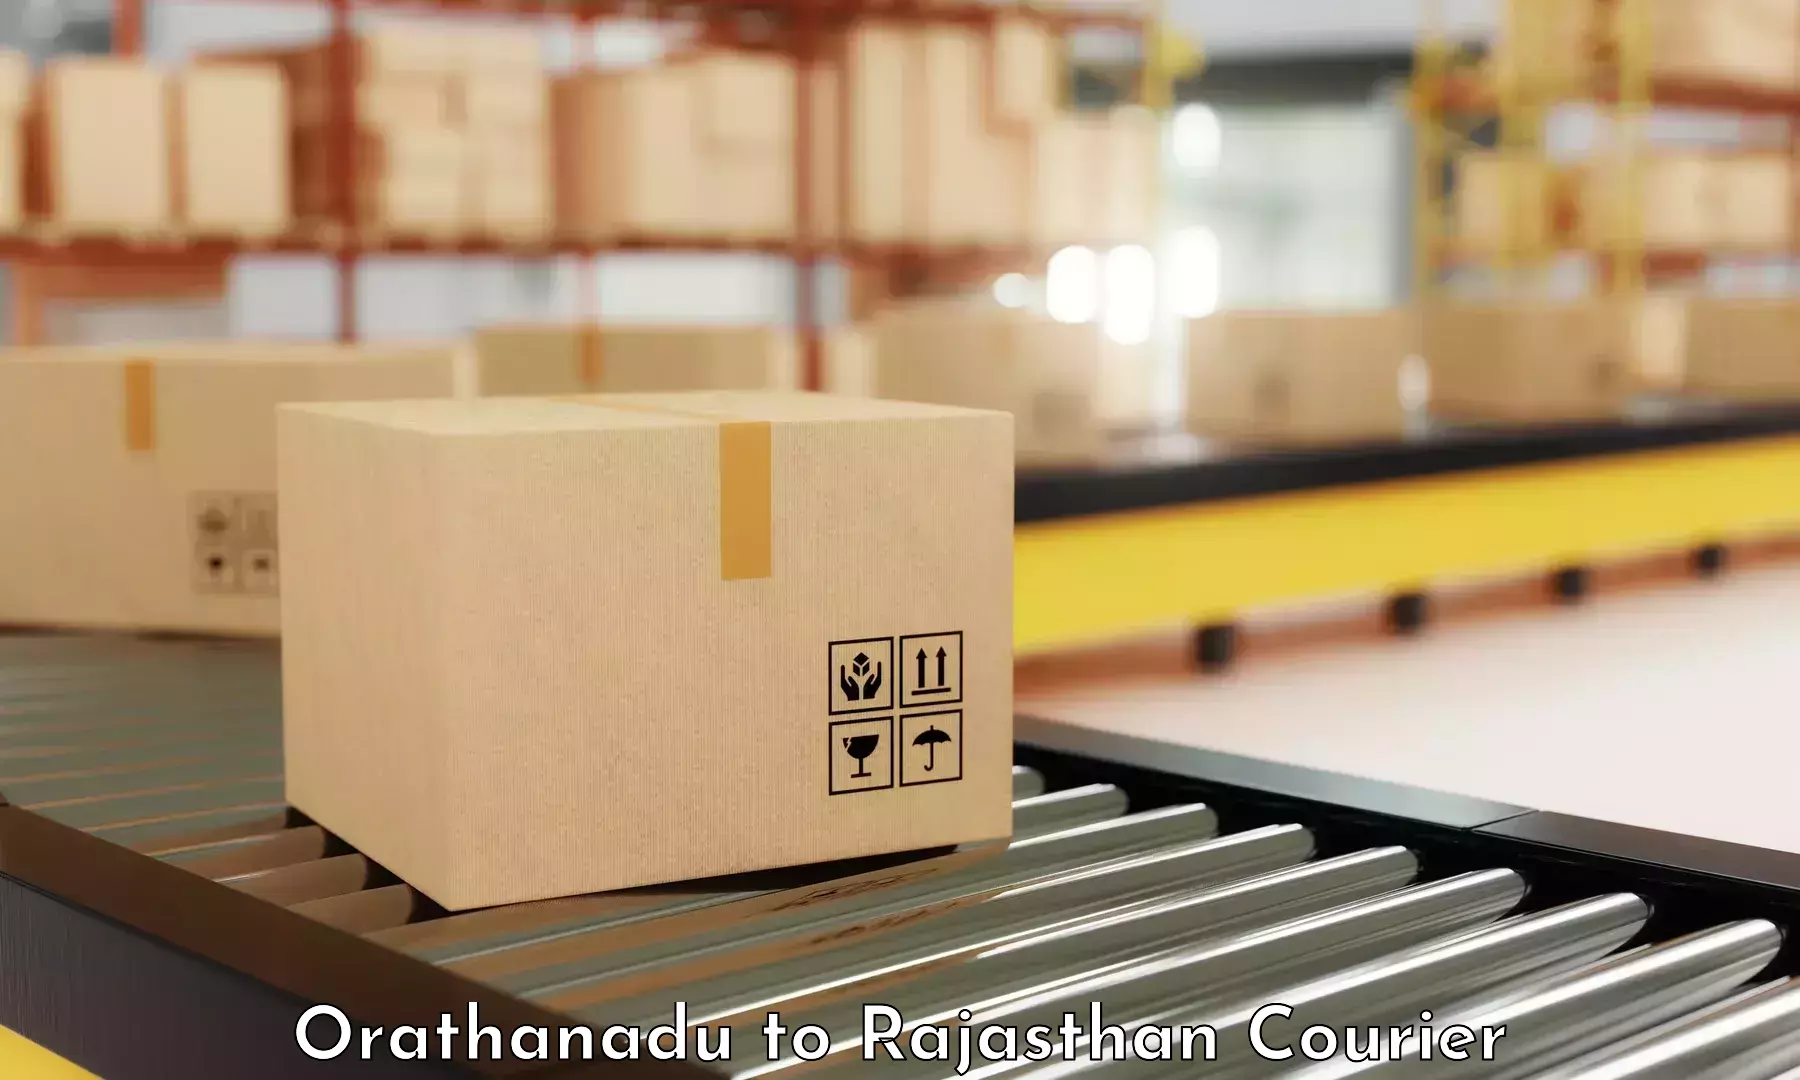 Cargo delivery service Orathanadu to Viratnagar